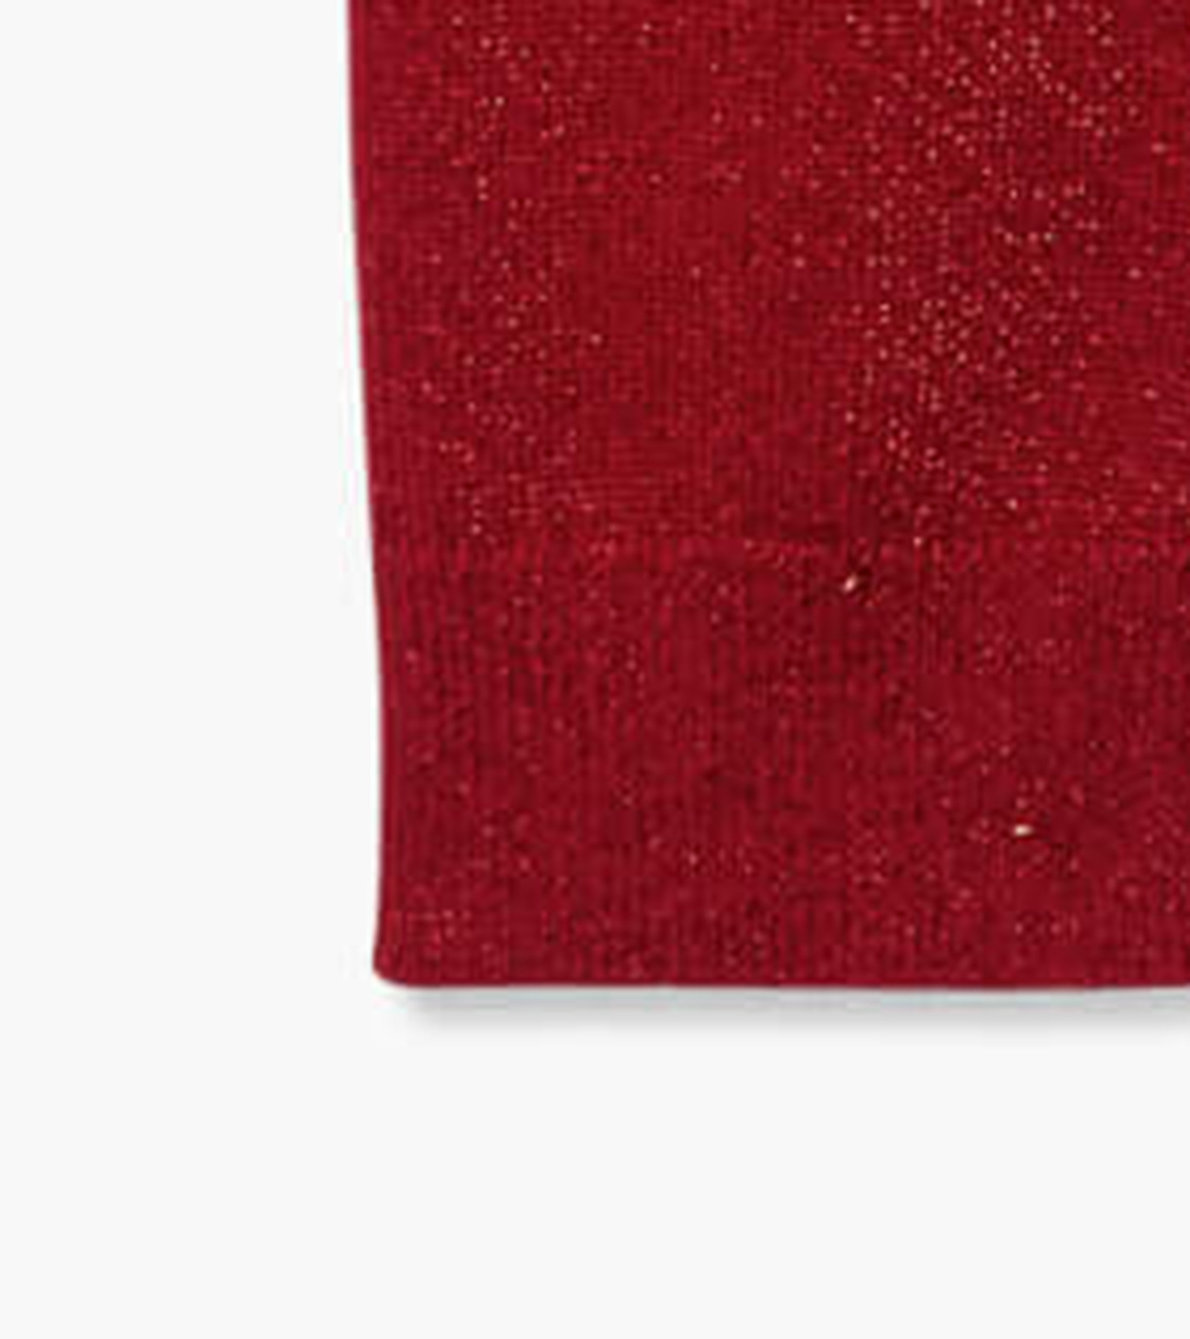 Agrandir l'image de Legging en tricot – Rouge scintillant